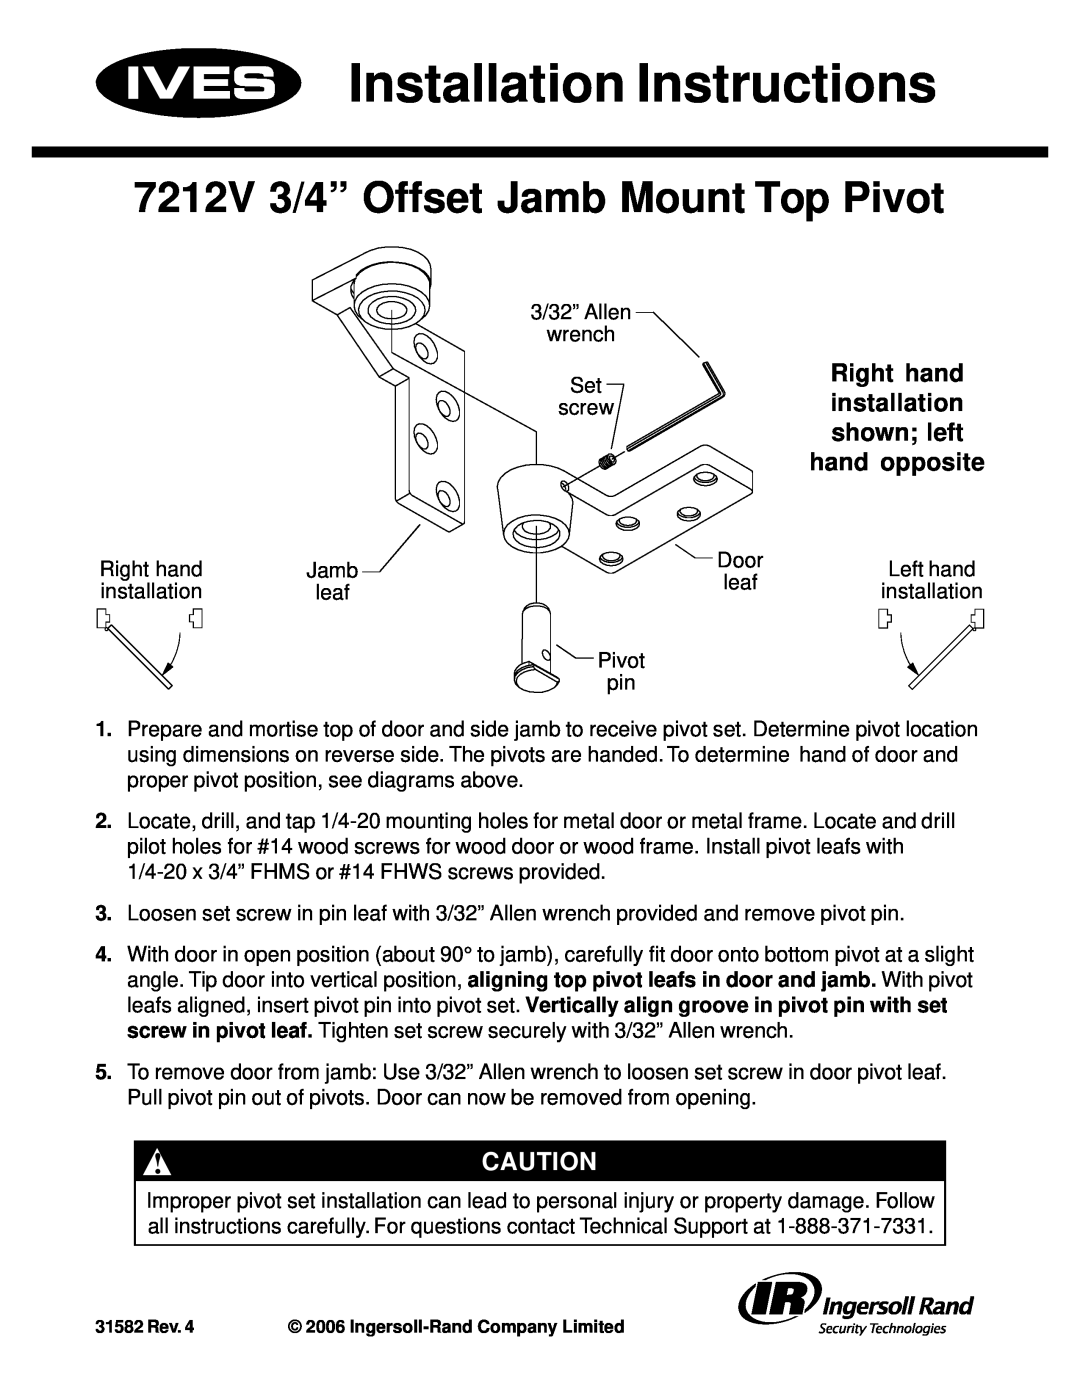 Ives 7212V installation instructions Right hand, hand opposite, Installation Instructions, shown left 